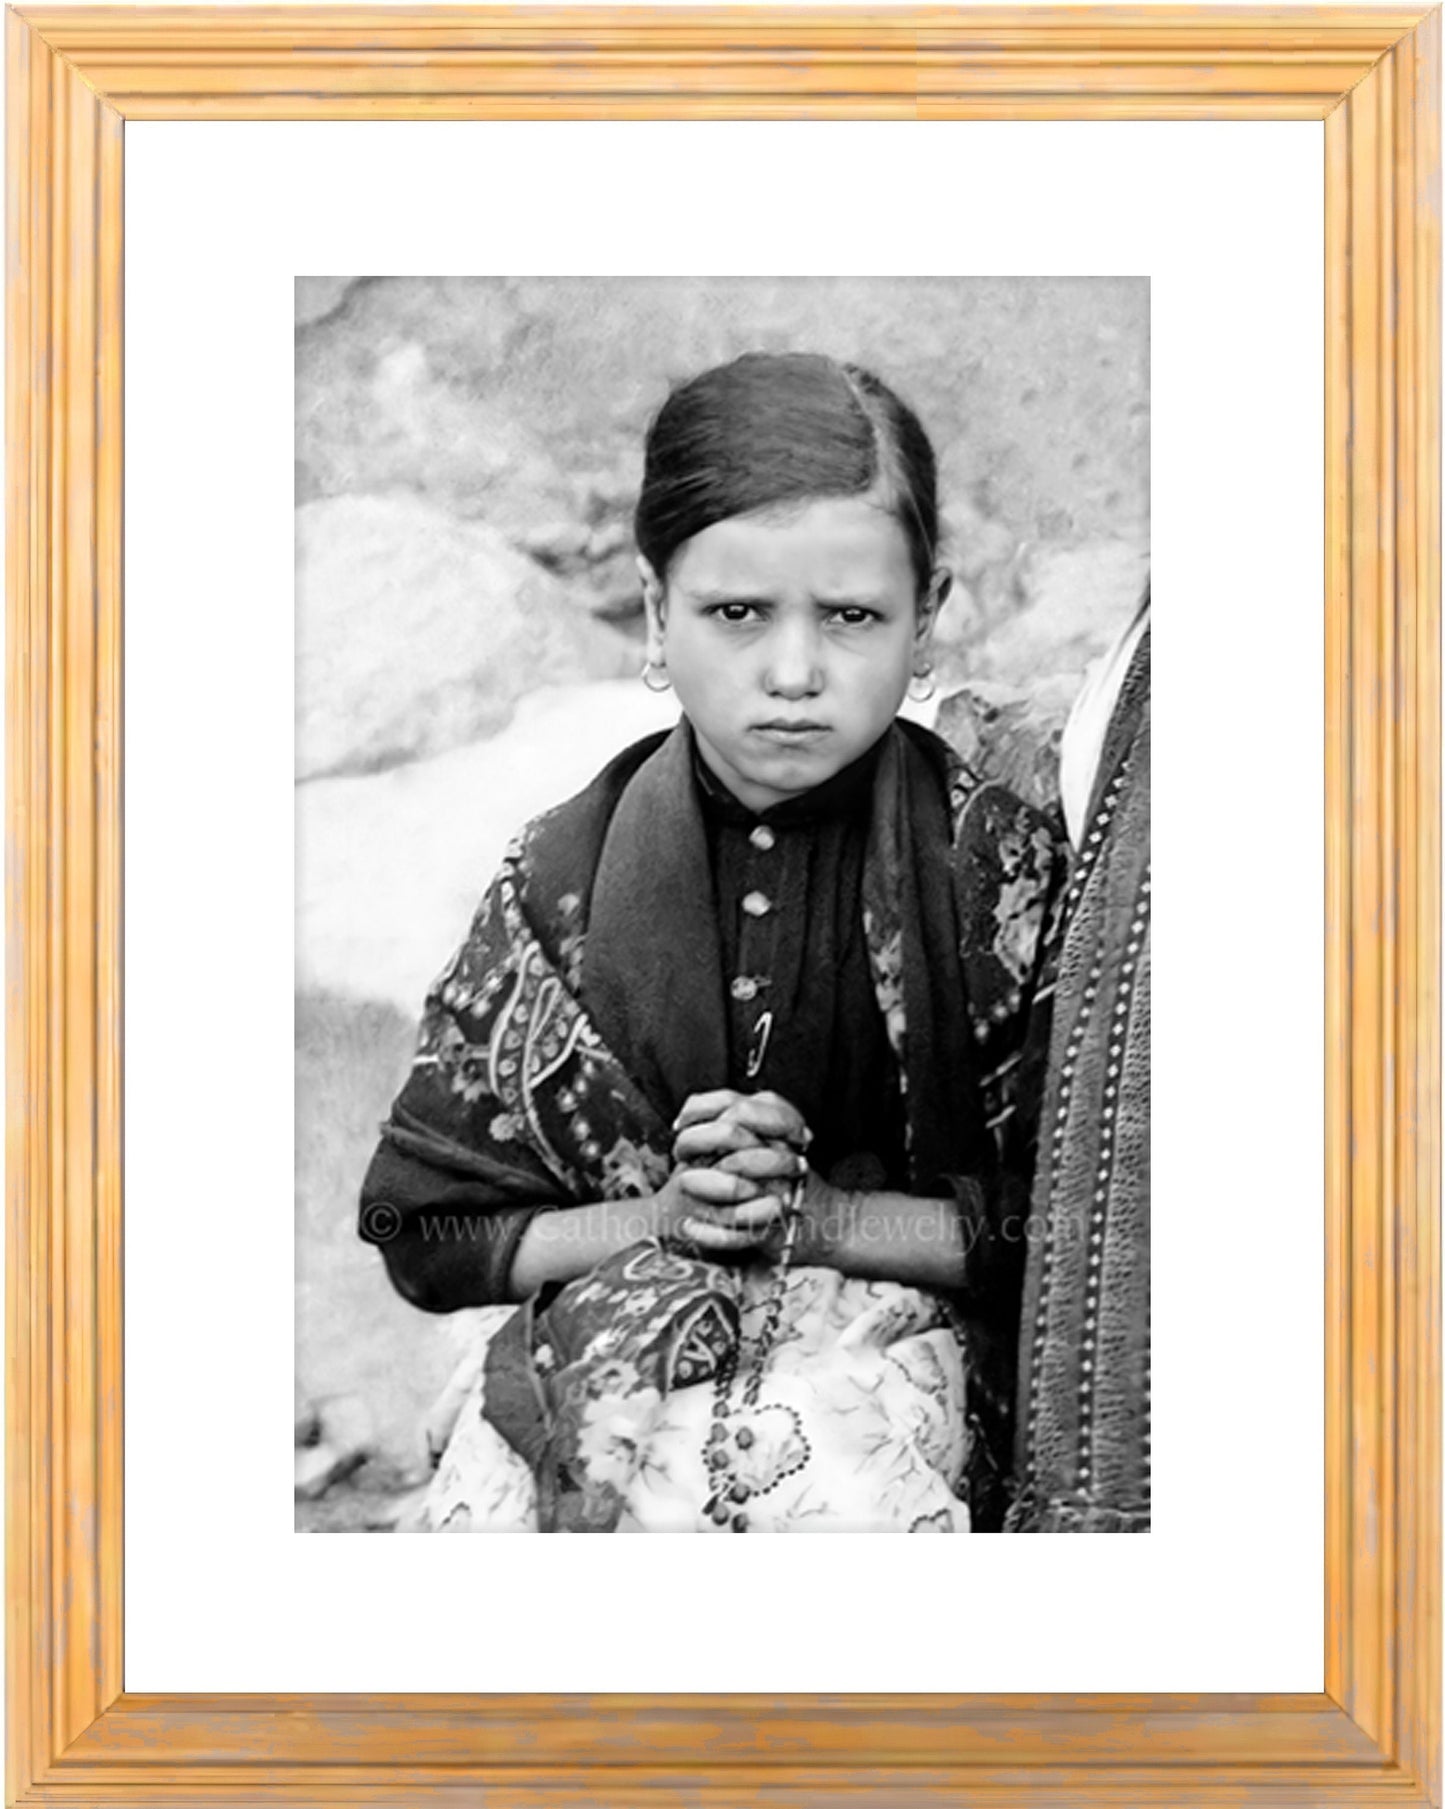 Exclusive! St. Jacinta of Fatima - AI Restored Photo! - 3 sizes - Vintage Catholic Art